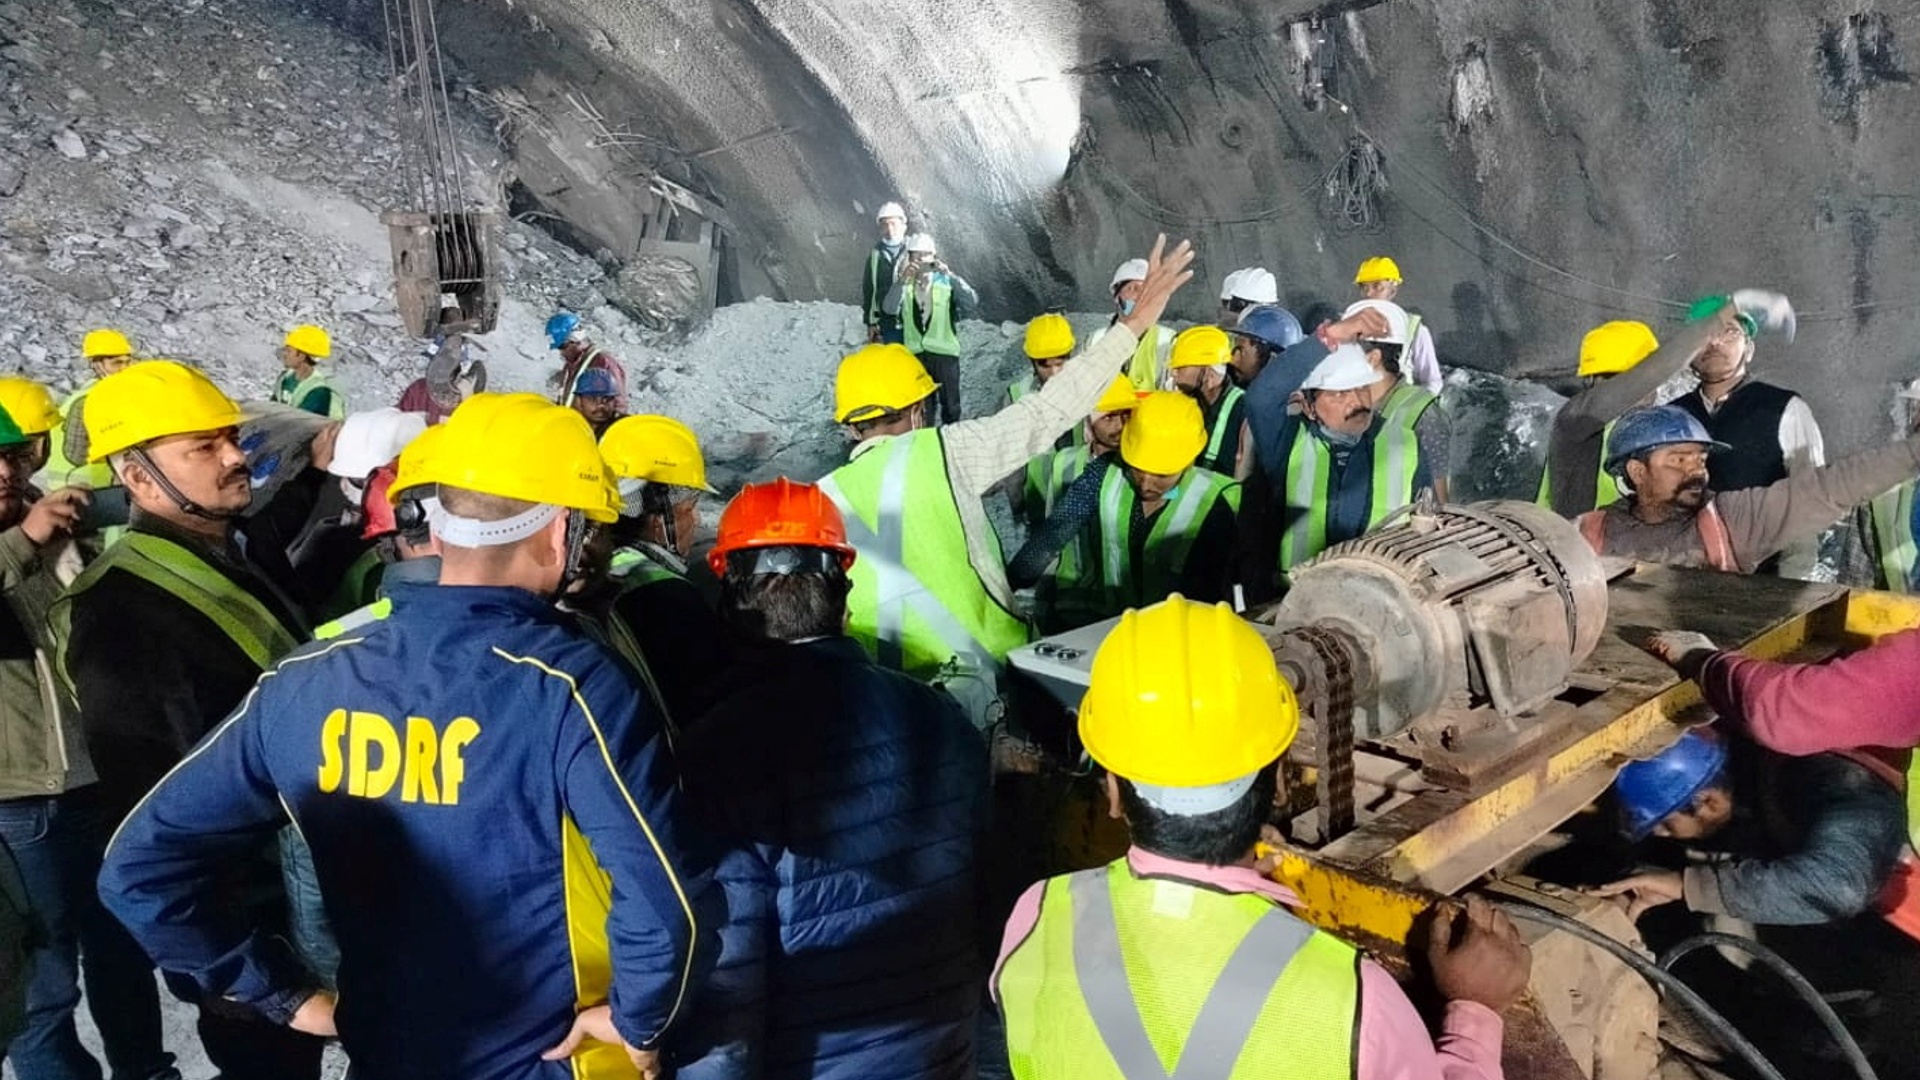 Родственники рабочих, застрявших в рухнувшем тоннеле в Индии, жалуются на медленный ход спасательных работ